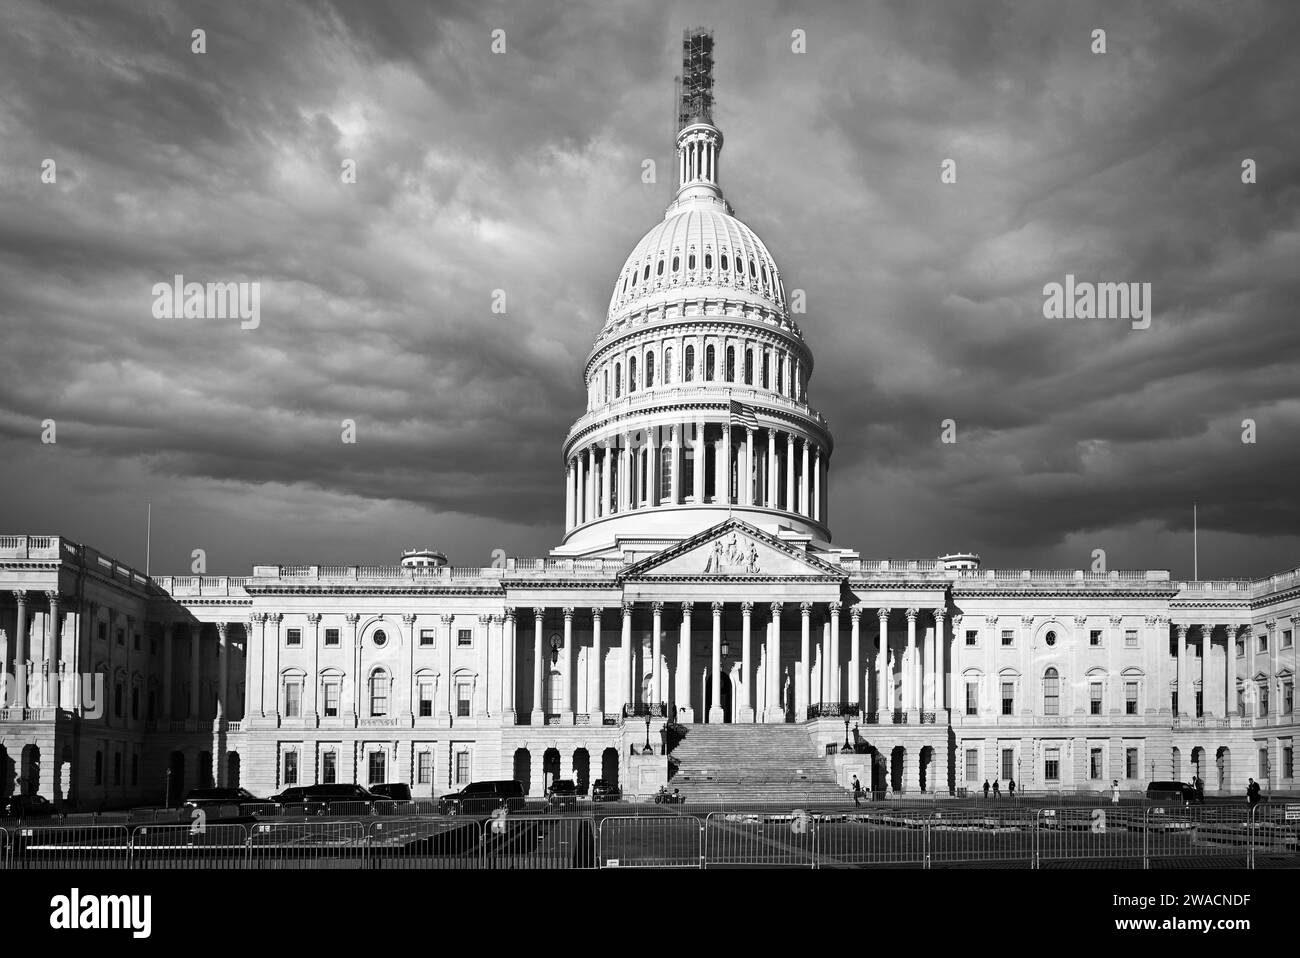 De style néoclassique, le bâtiment du Capitole des États-Unis abrite les affaires fédérales pour le Sénat et le Congrès et est une destination touristique populaire à Washington DC Banque D'Images